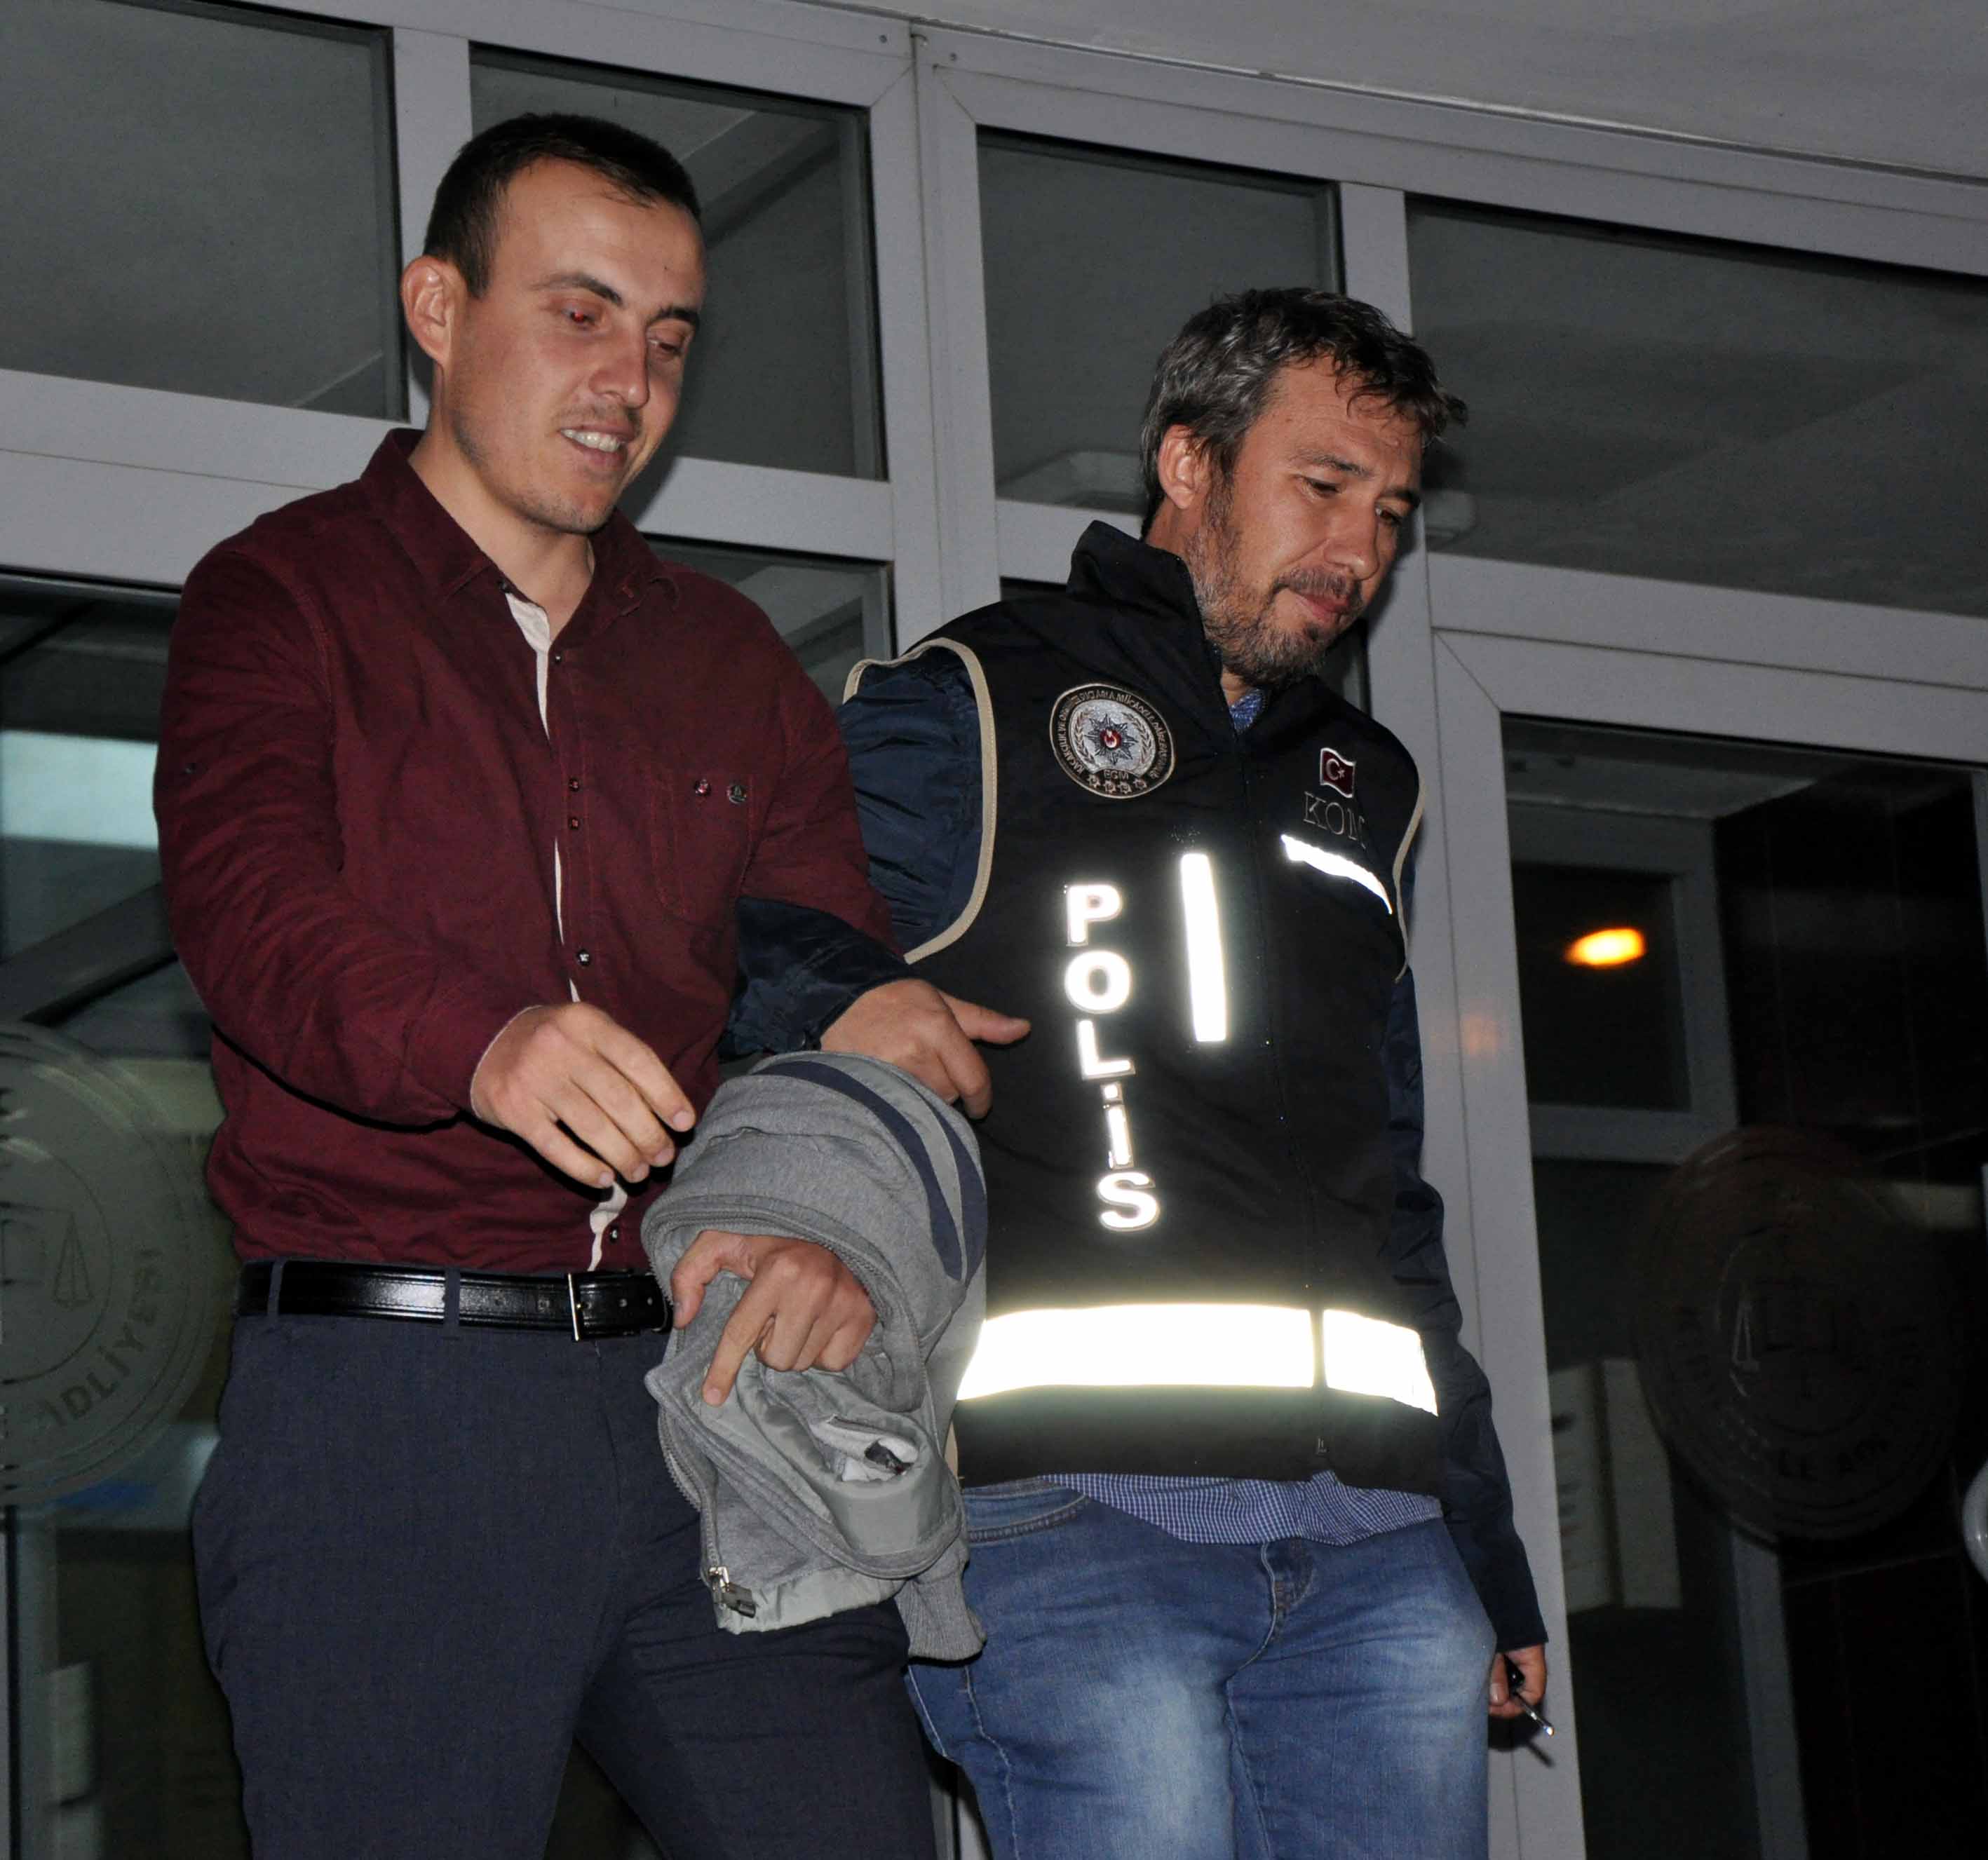 Öğrenci Evlerinin Abisi Tutuklandı - Kırıkkale Haber, Son Dakika Kırıkkale Haberleri